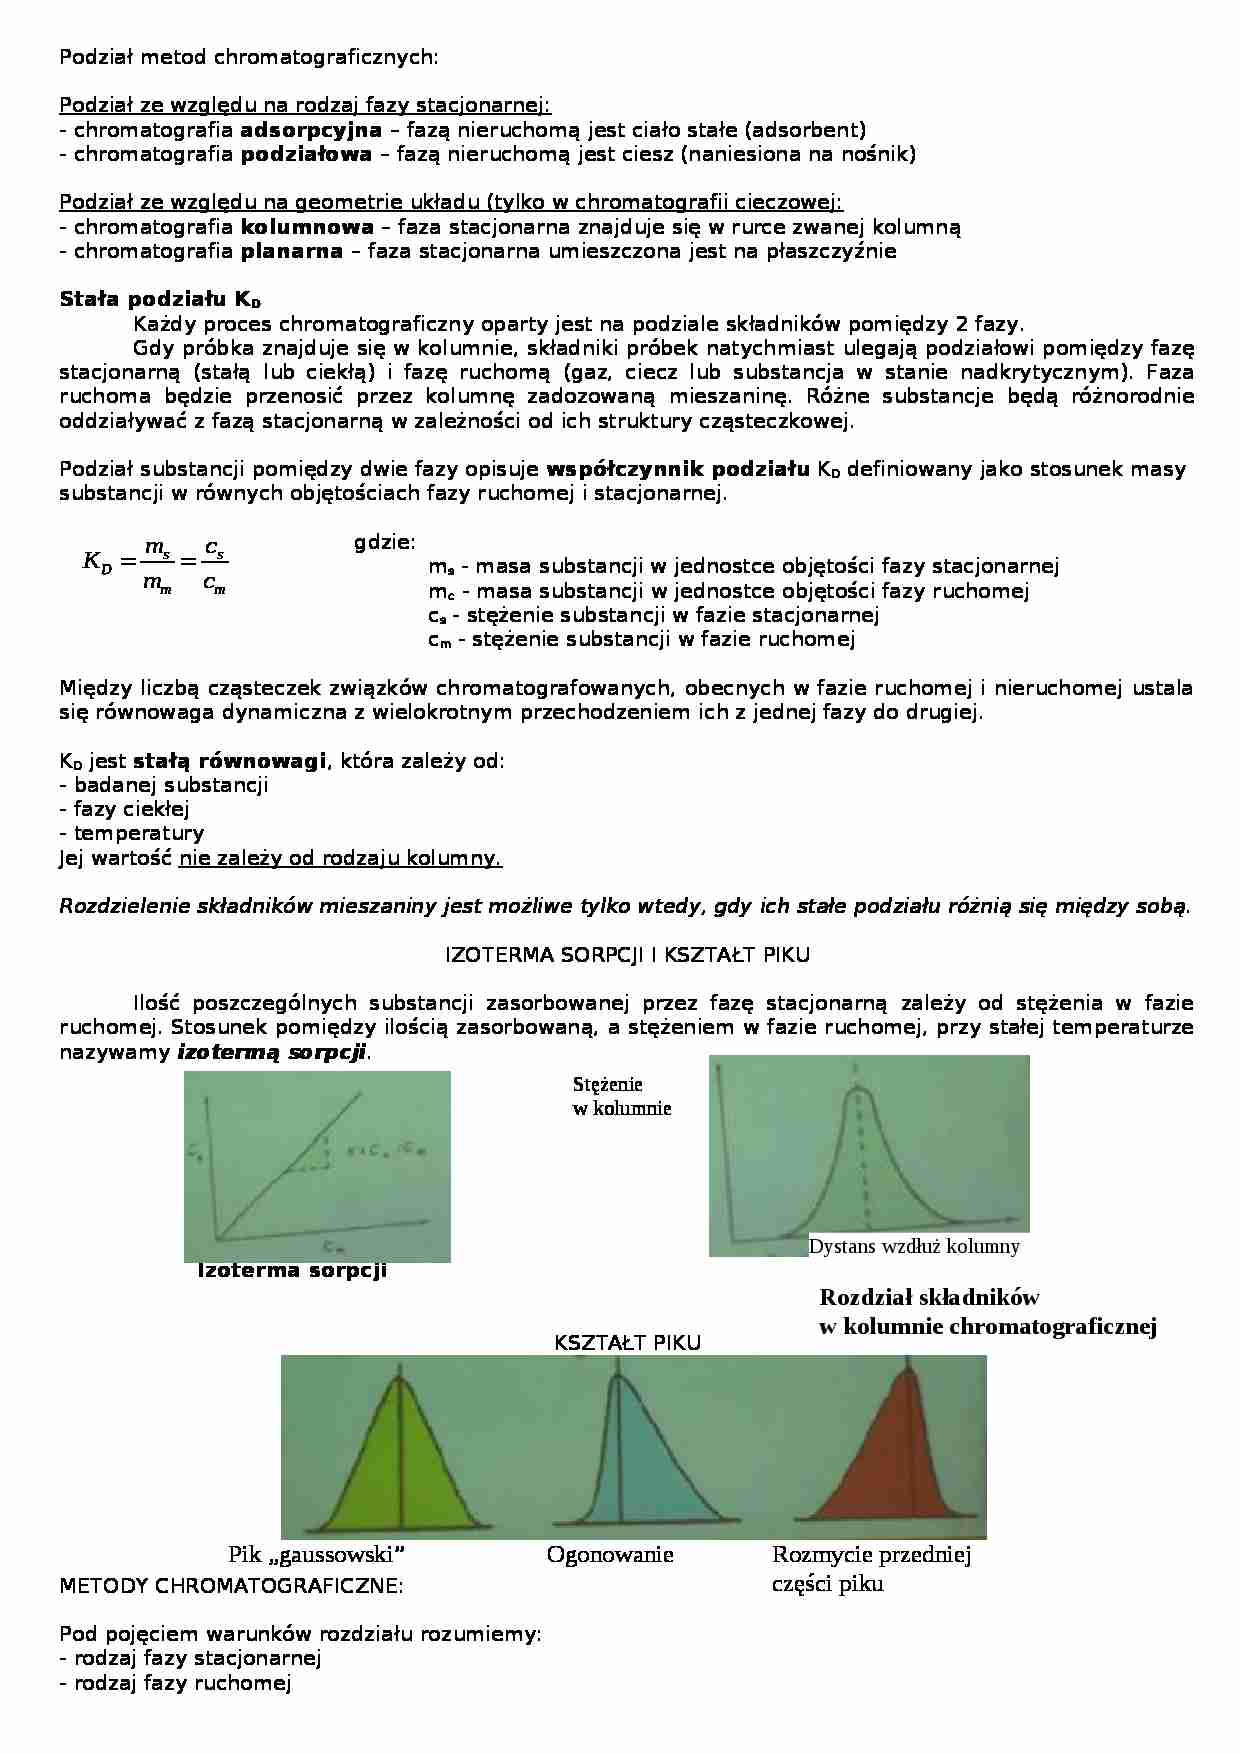 chemiczna analiza instrumentalna - metody chromatograficzne - strona 1